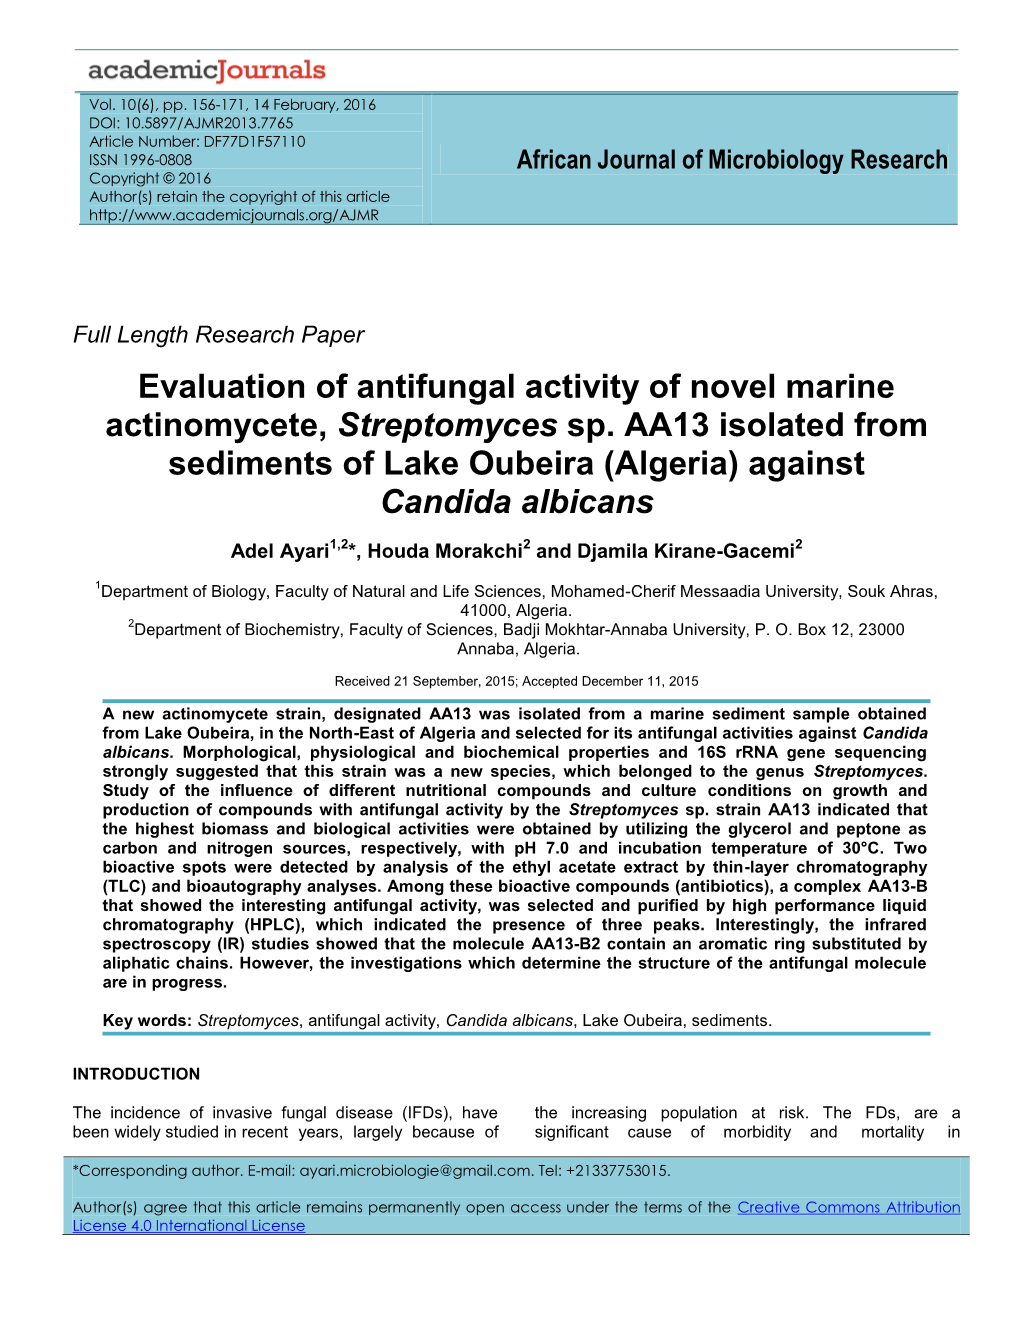 Evaluation of Antifungal Activity of Novel Marine Actinomycete, Streptomyces Sp